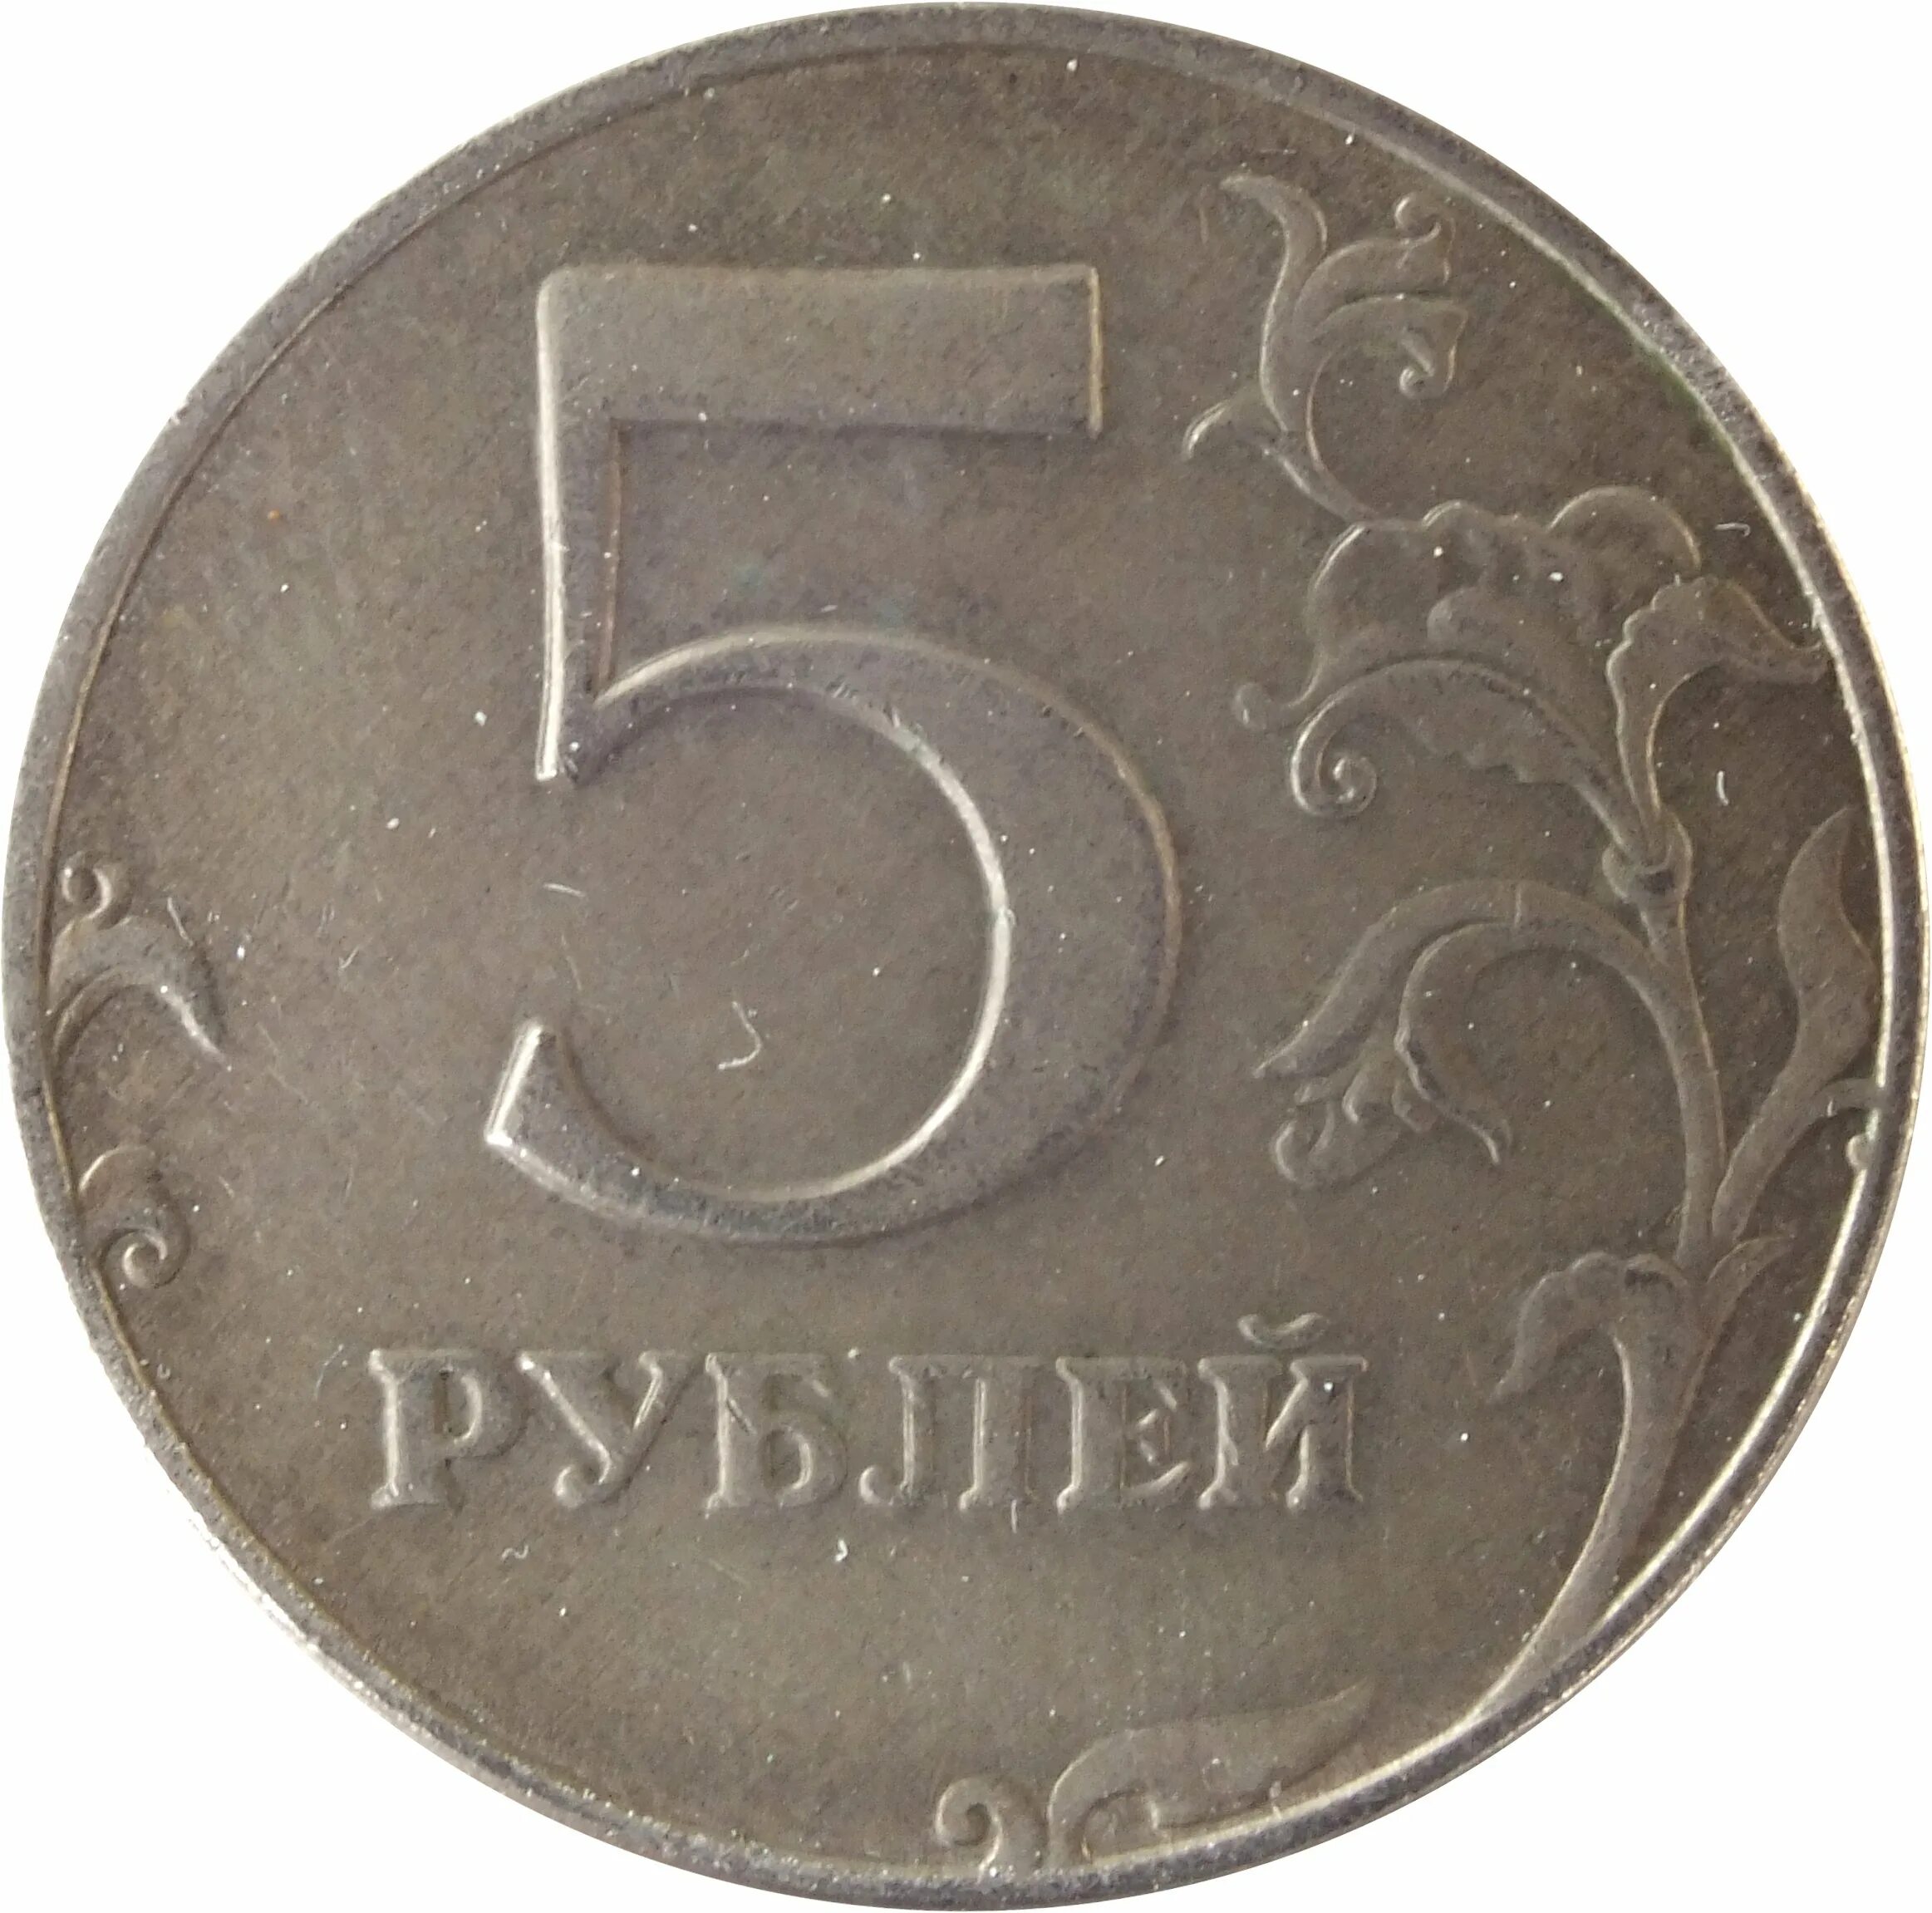 5 рублей материал. Монета 5 рублей. Монета 5 рублей реверс. Монета "5 рублей 1907 года". Монета 5 рублей без фона.